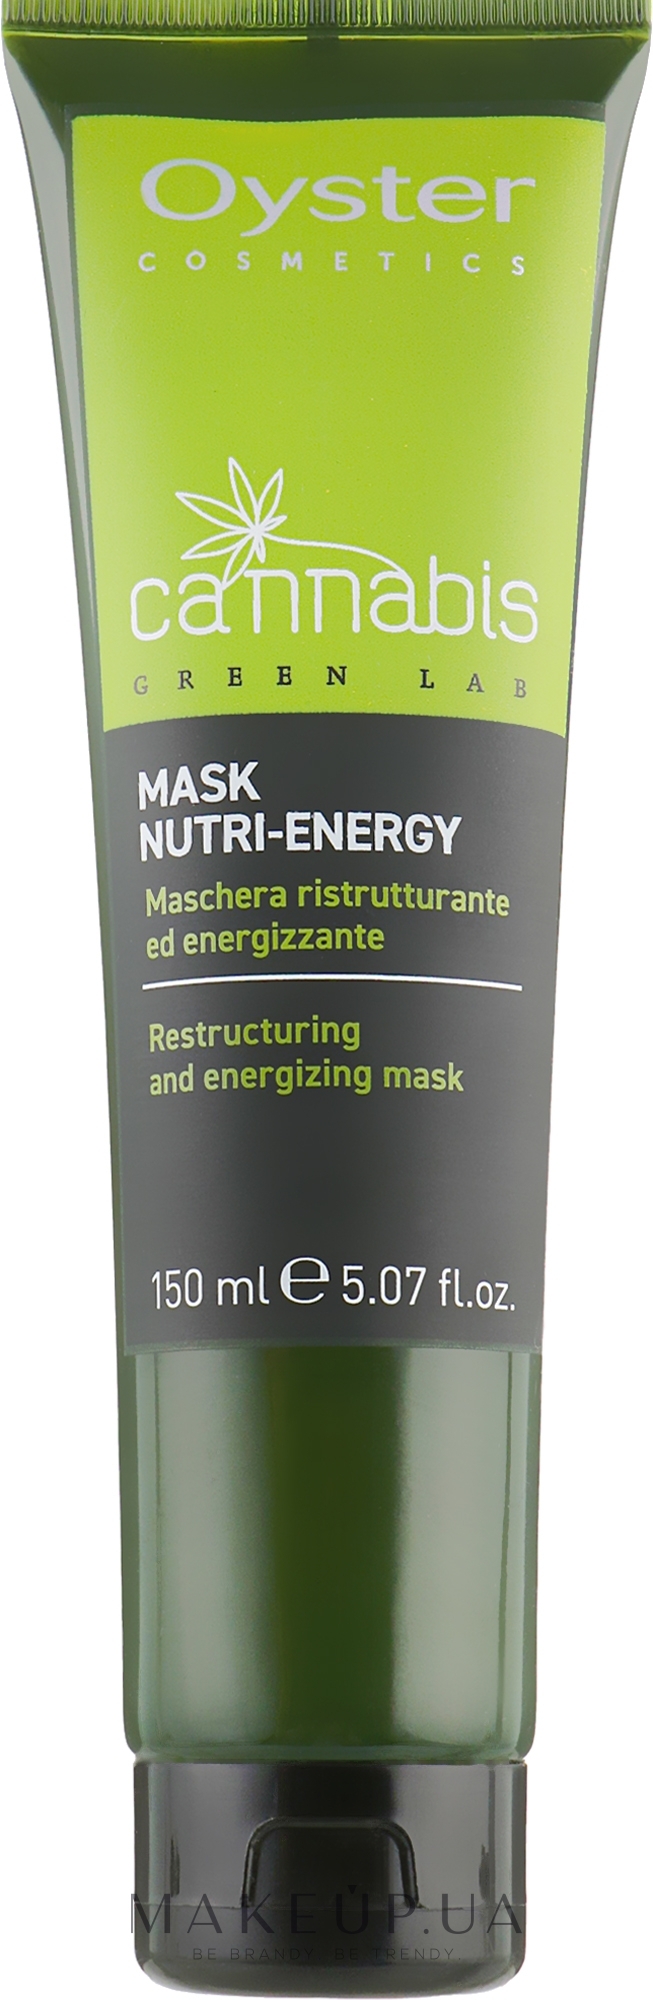 Восстанавливающая маска для волос - Oyster Cosmetics Cannabis Green Lab Mask Nutri-Energy — фото 150ml